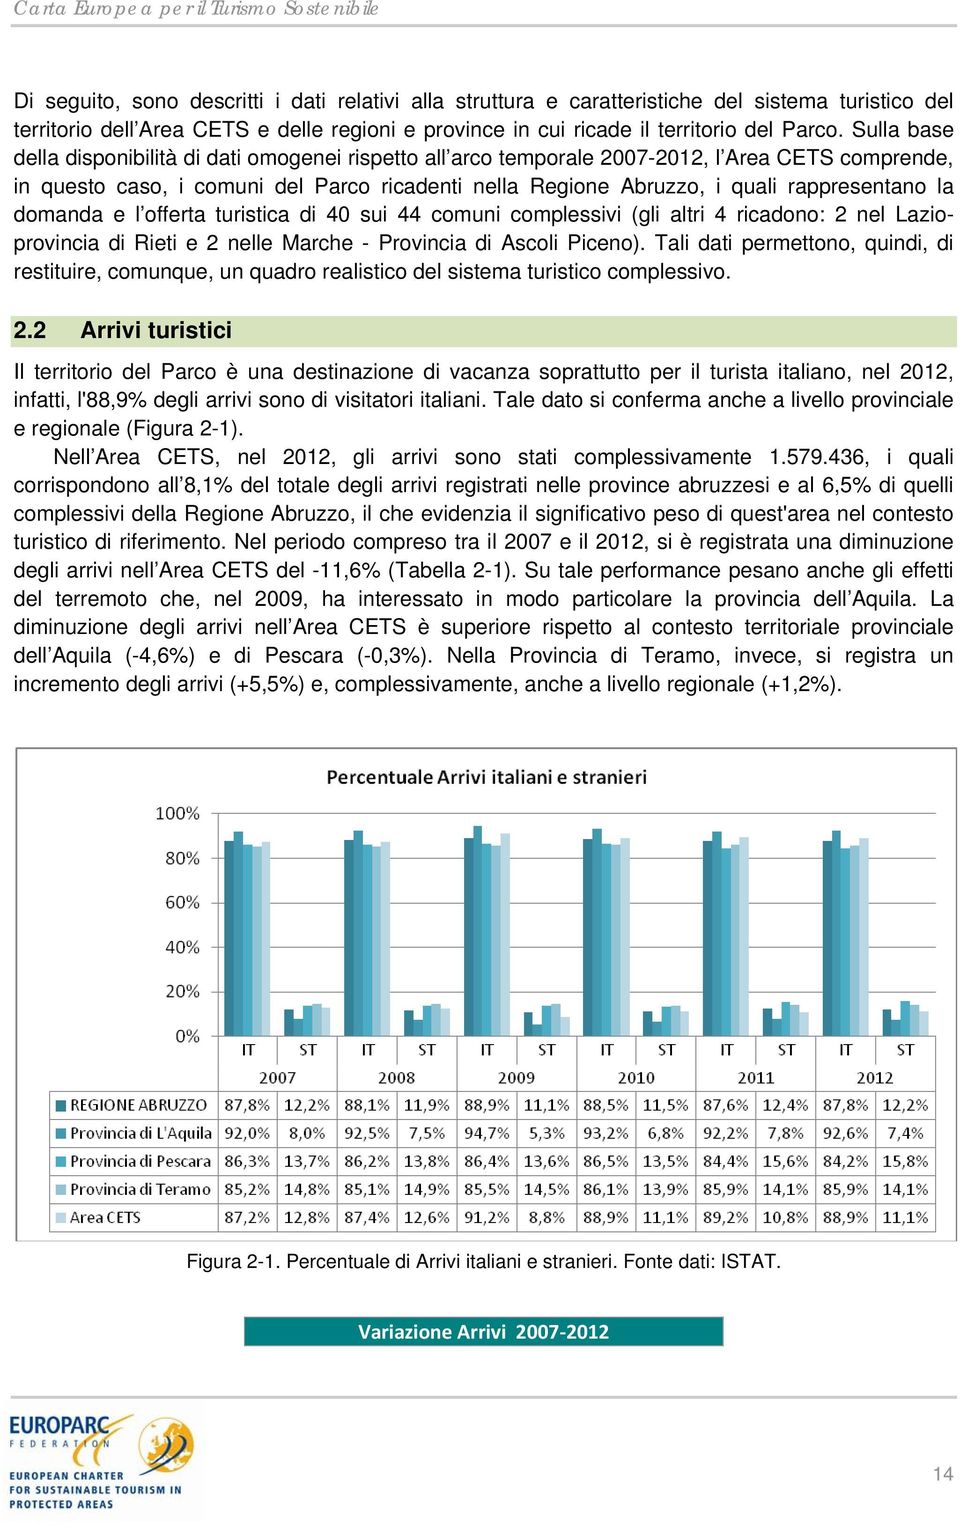 Sulla base della disponibilità di dati omogenei rispetto all arco temporale 2007-2012, l Area CETS comprende, in questo caso, i comuni del Parco ricadenti nella Regione Abruzzo, i quali rappresentano